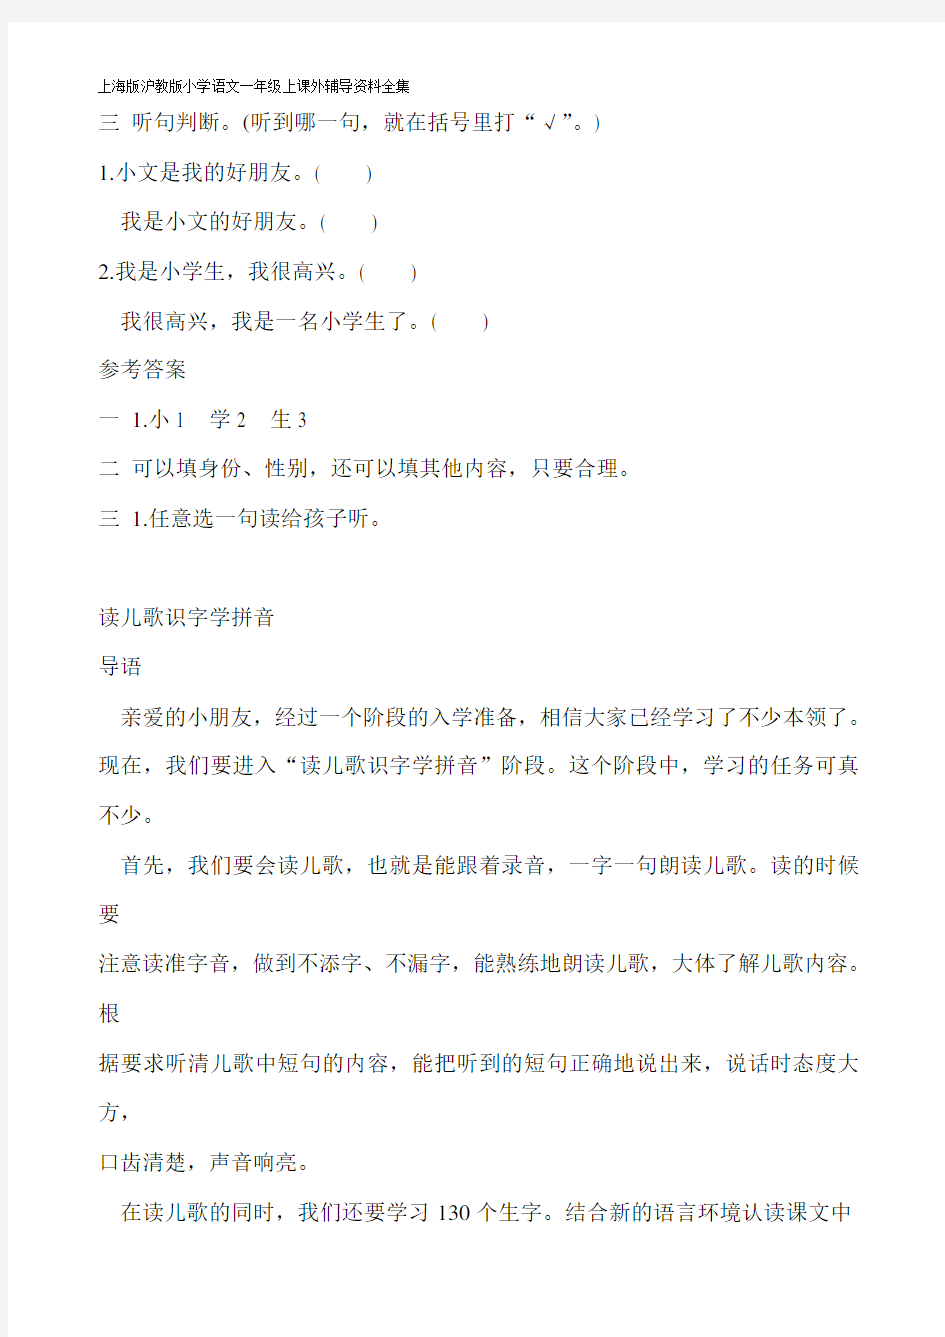 上海版沪教版小学语文一年级上课外辅导资料全集